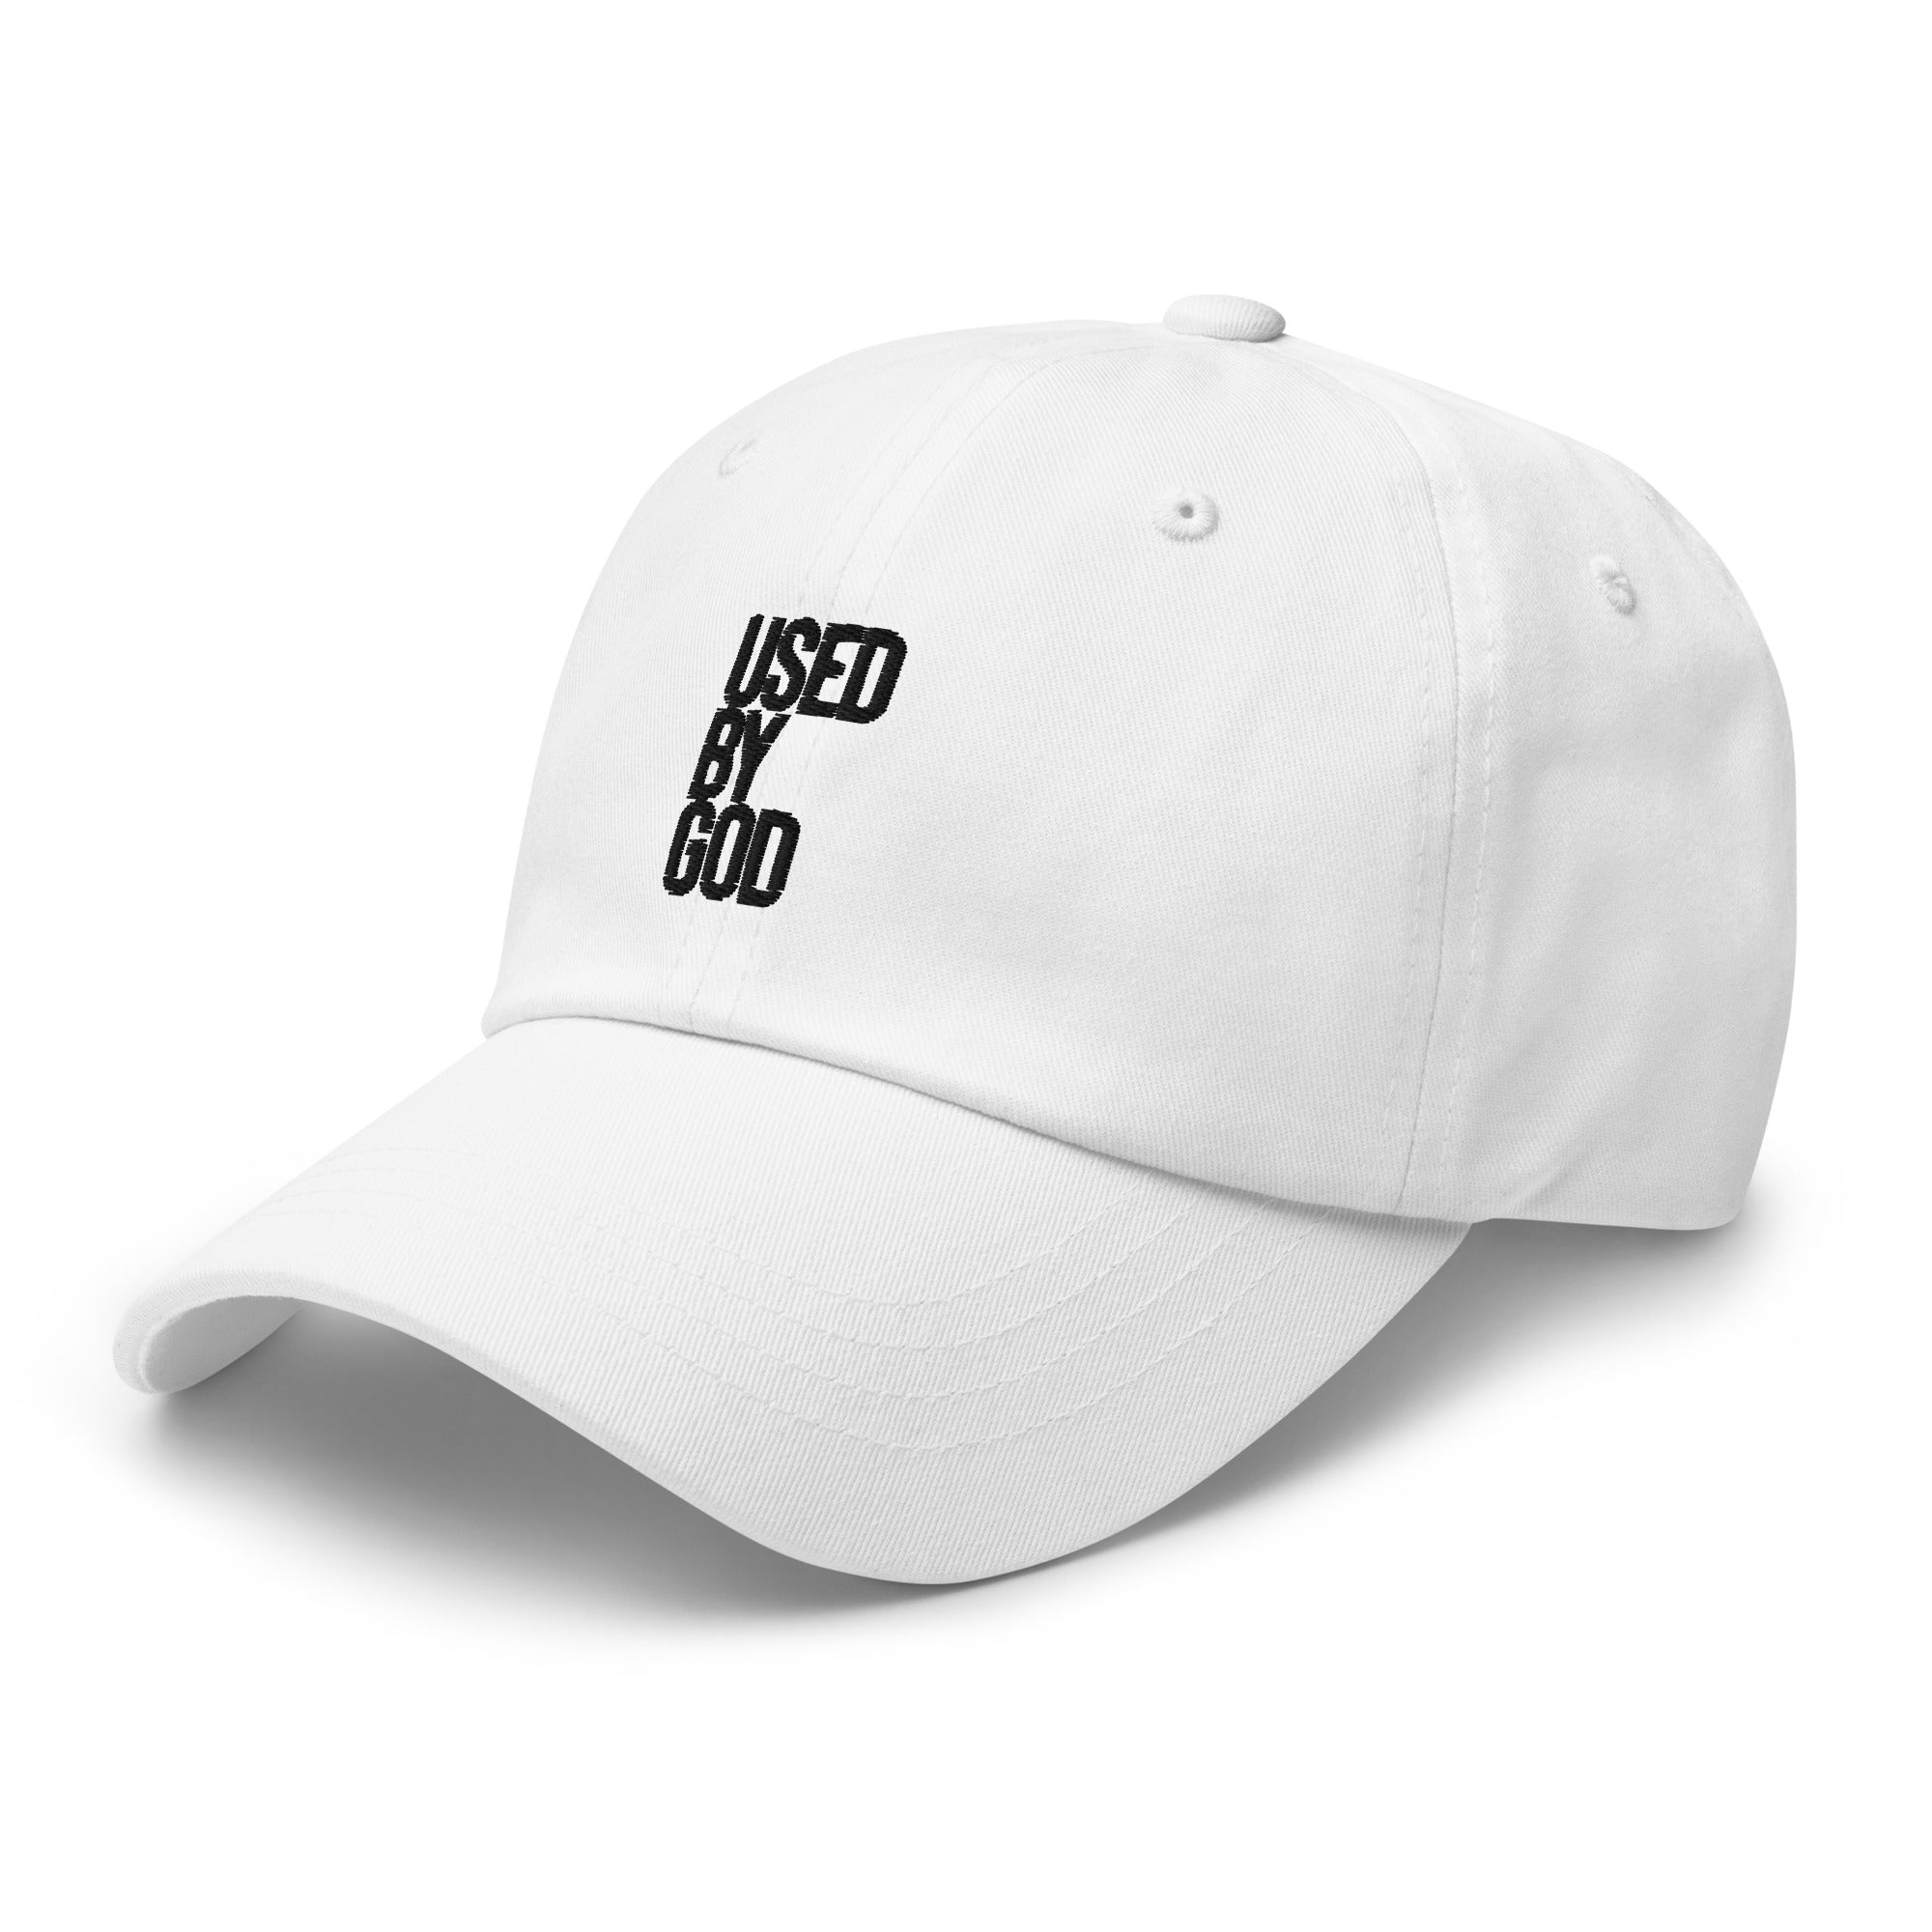 UBG Logo B&W Dad Hat